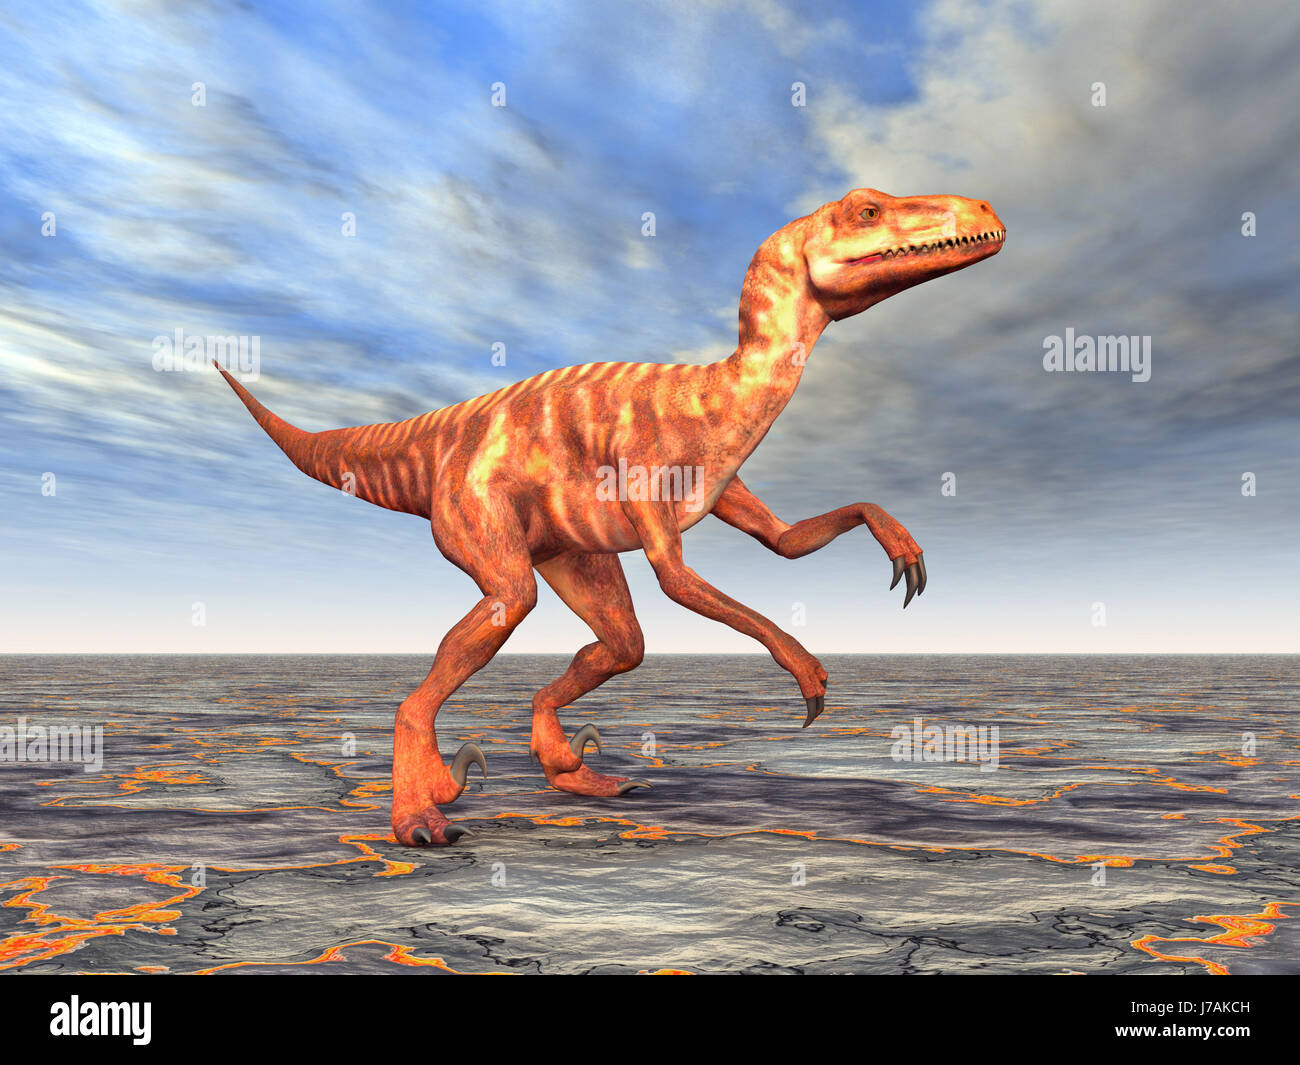 Deinonychus Stock Photo - Download Image Now - Deinonychus, Dinosaur,  Feather - iStock